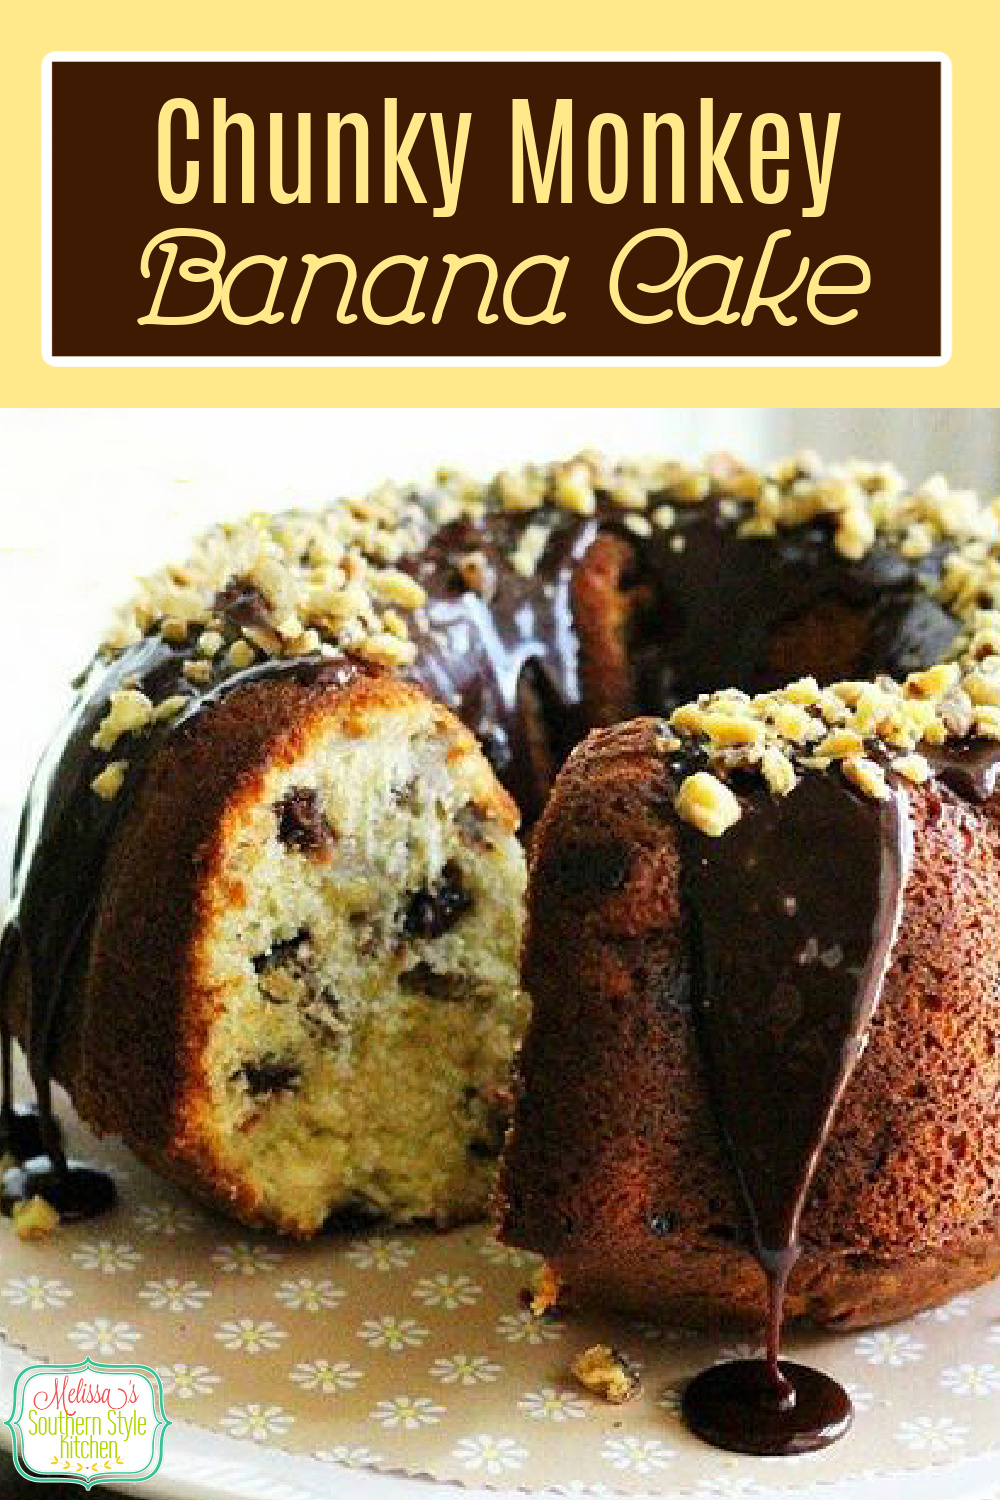 This chocolate glazed Chunky Monkey Banana Cake recipe is a riff on the famous Ben and Jerry's ice cream #bananacake #bundtcakes #bananabundtcake #chunkymonkeycake #cakes #bestcakerecipes #bananas #southerncakes #desserts